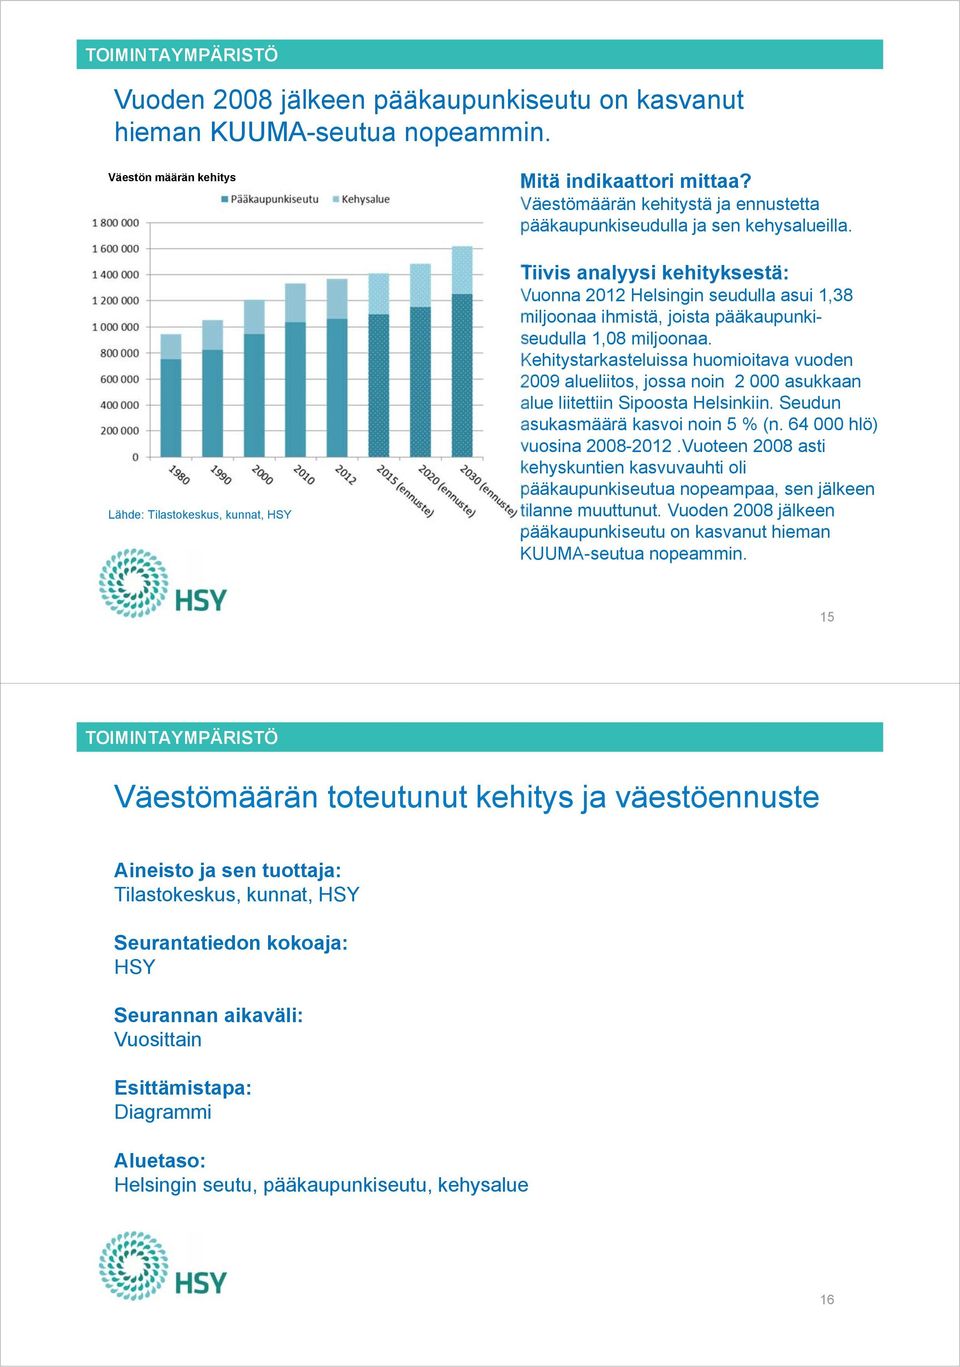 Vuonna 2012 Helsingin seudulla asui 1,38 miljoonaa ihmistä, joista pääkaupunkiseudulla 1,08 miljoonaa.